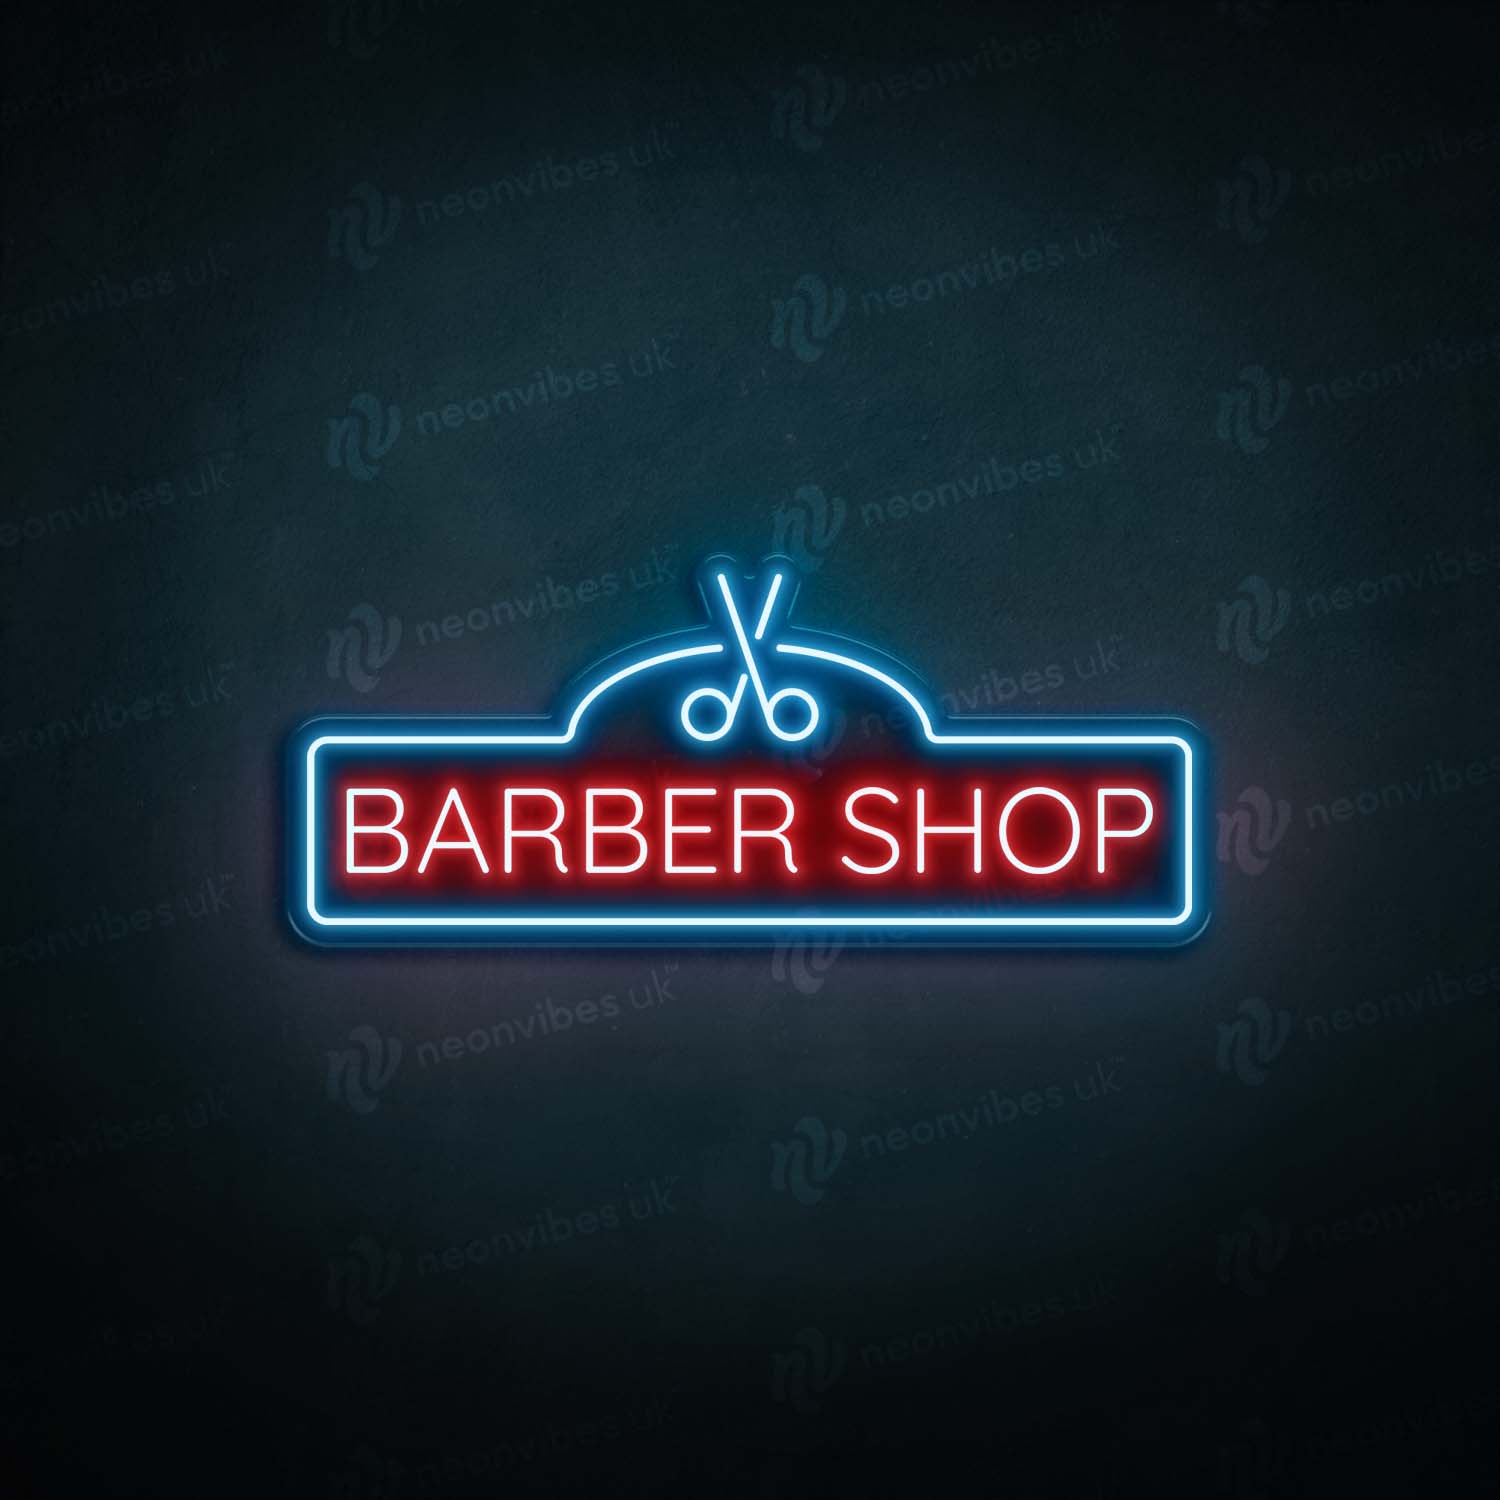 Barber Shop neon sign